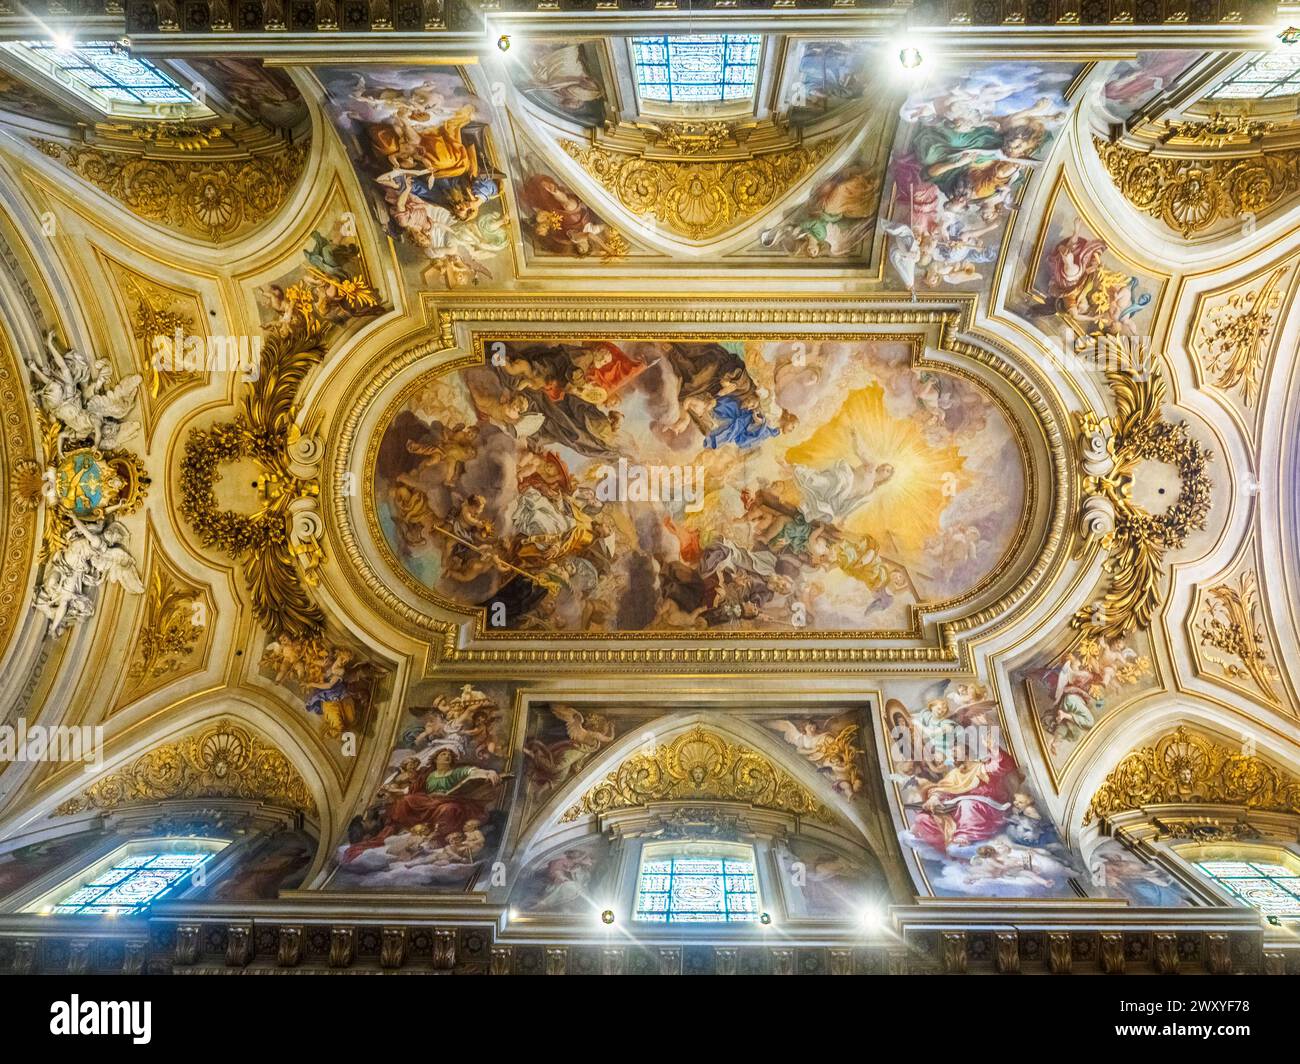 Il sontuoso affresco della volta, decorato con il Trionfo dell'ordine francescano di Baciccio (1707) - Basilica dei Santi XII Apostoli - Roma Italia Foto Stock